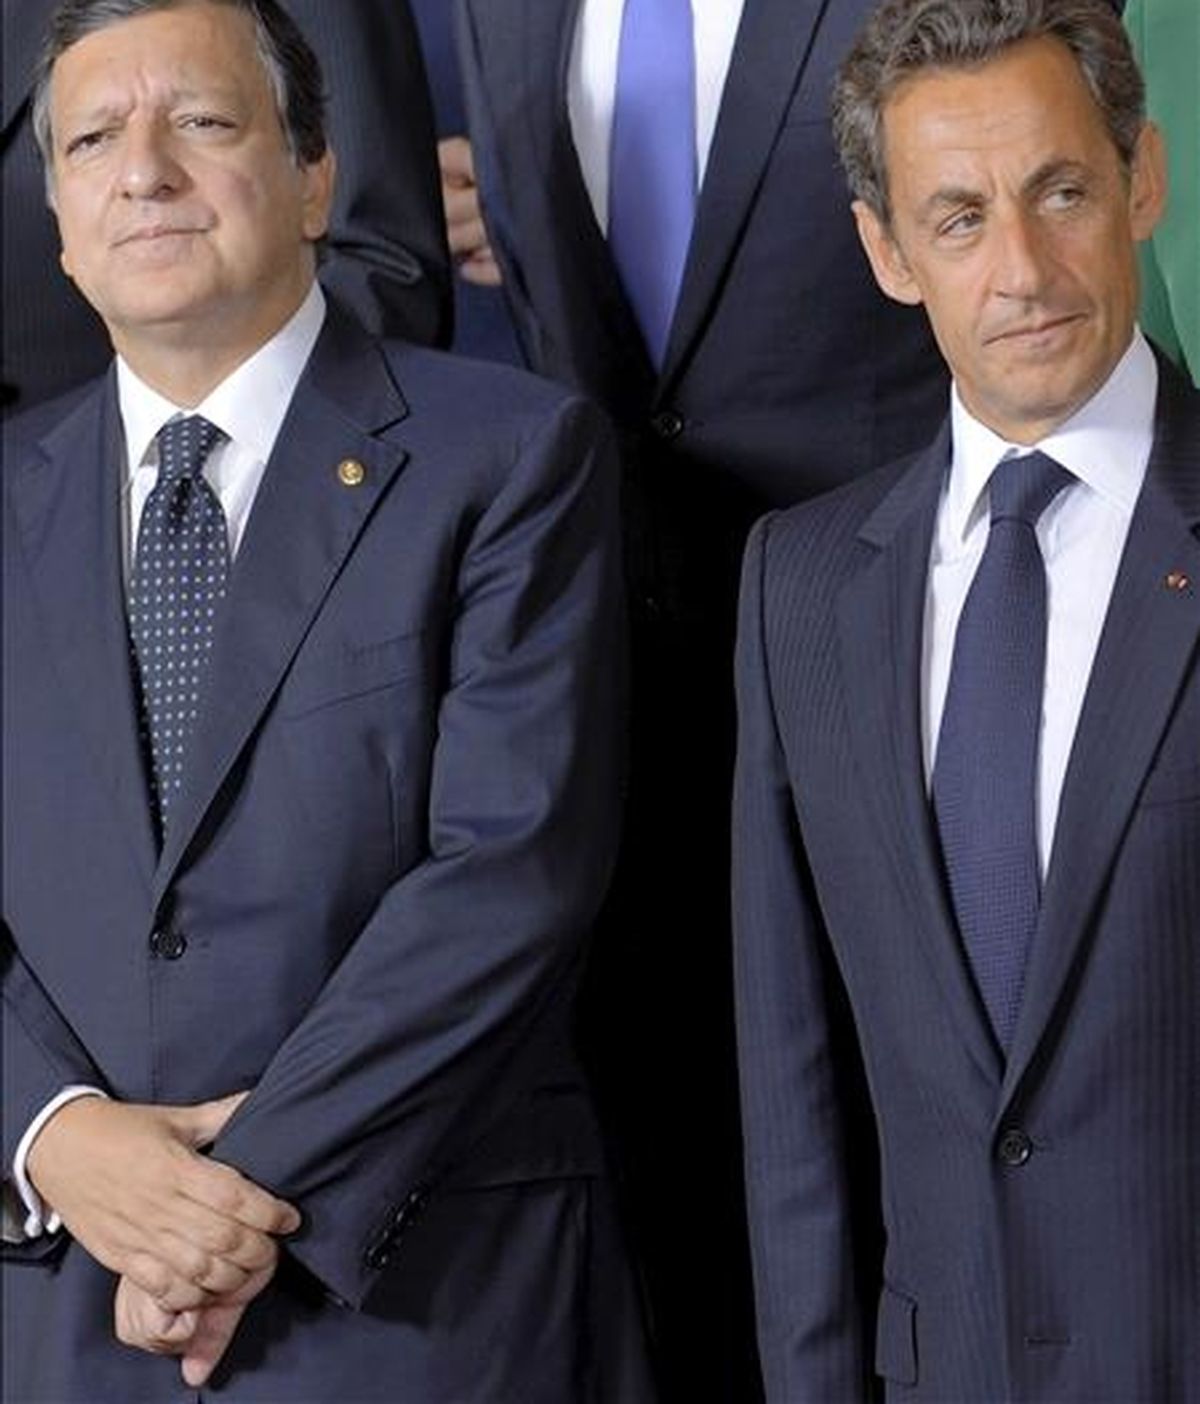 El presidente de la Comisión Europea, el portugués Jose Durao Barroso (i), y el presidente francés, Nicolas Sarkozy (d), durante la foto de familia en la cumbre del Consejo Europeo que se celebra hoy jueves 16 de septiembre de 2010 en Bruselas, Bélgica. Los líderes de la Unión Europea celebran hoy una cumbre destinada a reforzar su política exterior en un momento de tensiones internas debido a la polémica expulsión de gitanos rumanos y búlgaros por parte de Francia. EFE